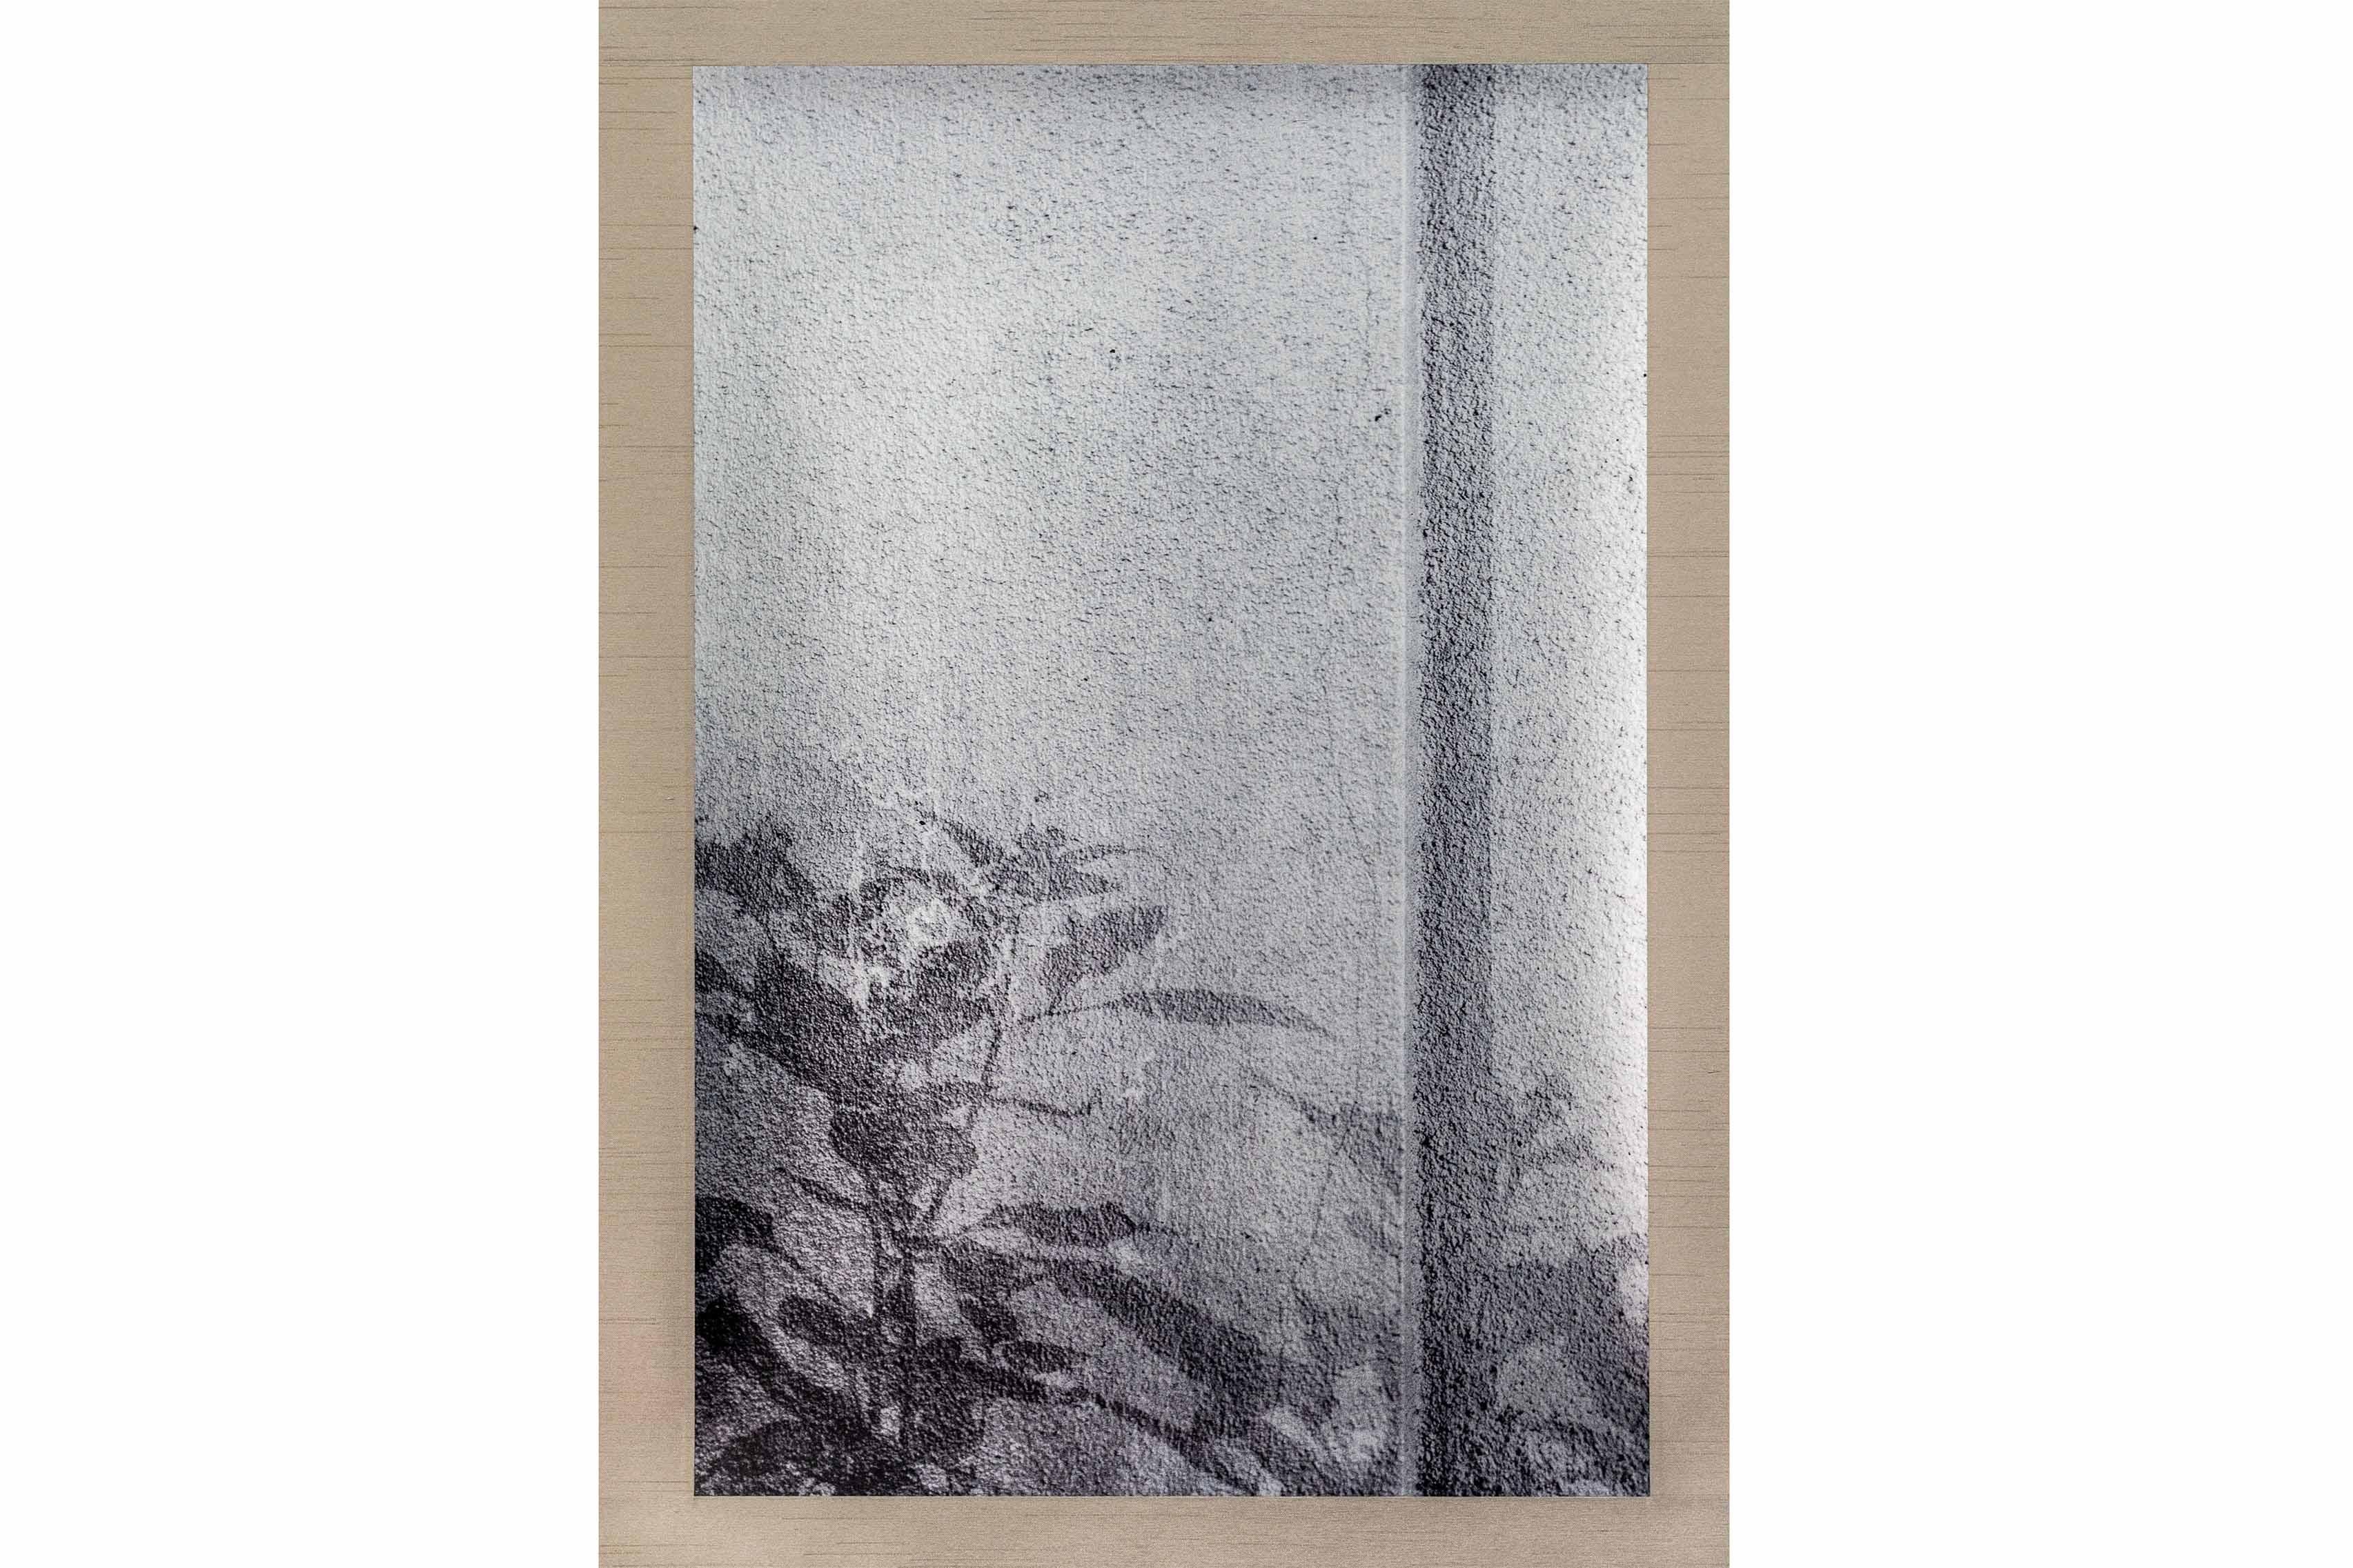 Tirage UV d'une photographie numérique sur feuille d'argent sur papier

Kojun est un artiste autodidacte américain multimédia né en 1977 et basé à Tokyo, au Japon, depuis 1999. Le projet Kojun, lancé en 2010, explore les expériences de la beauté